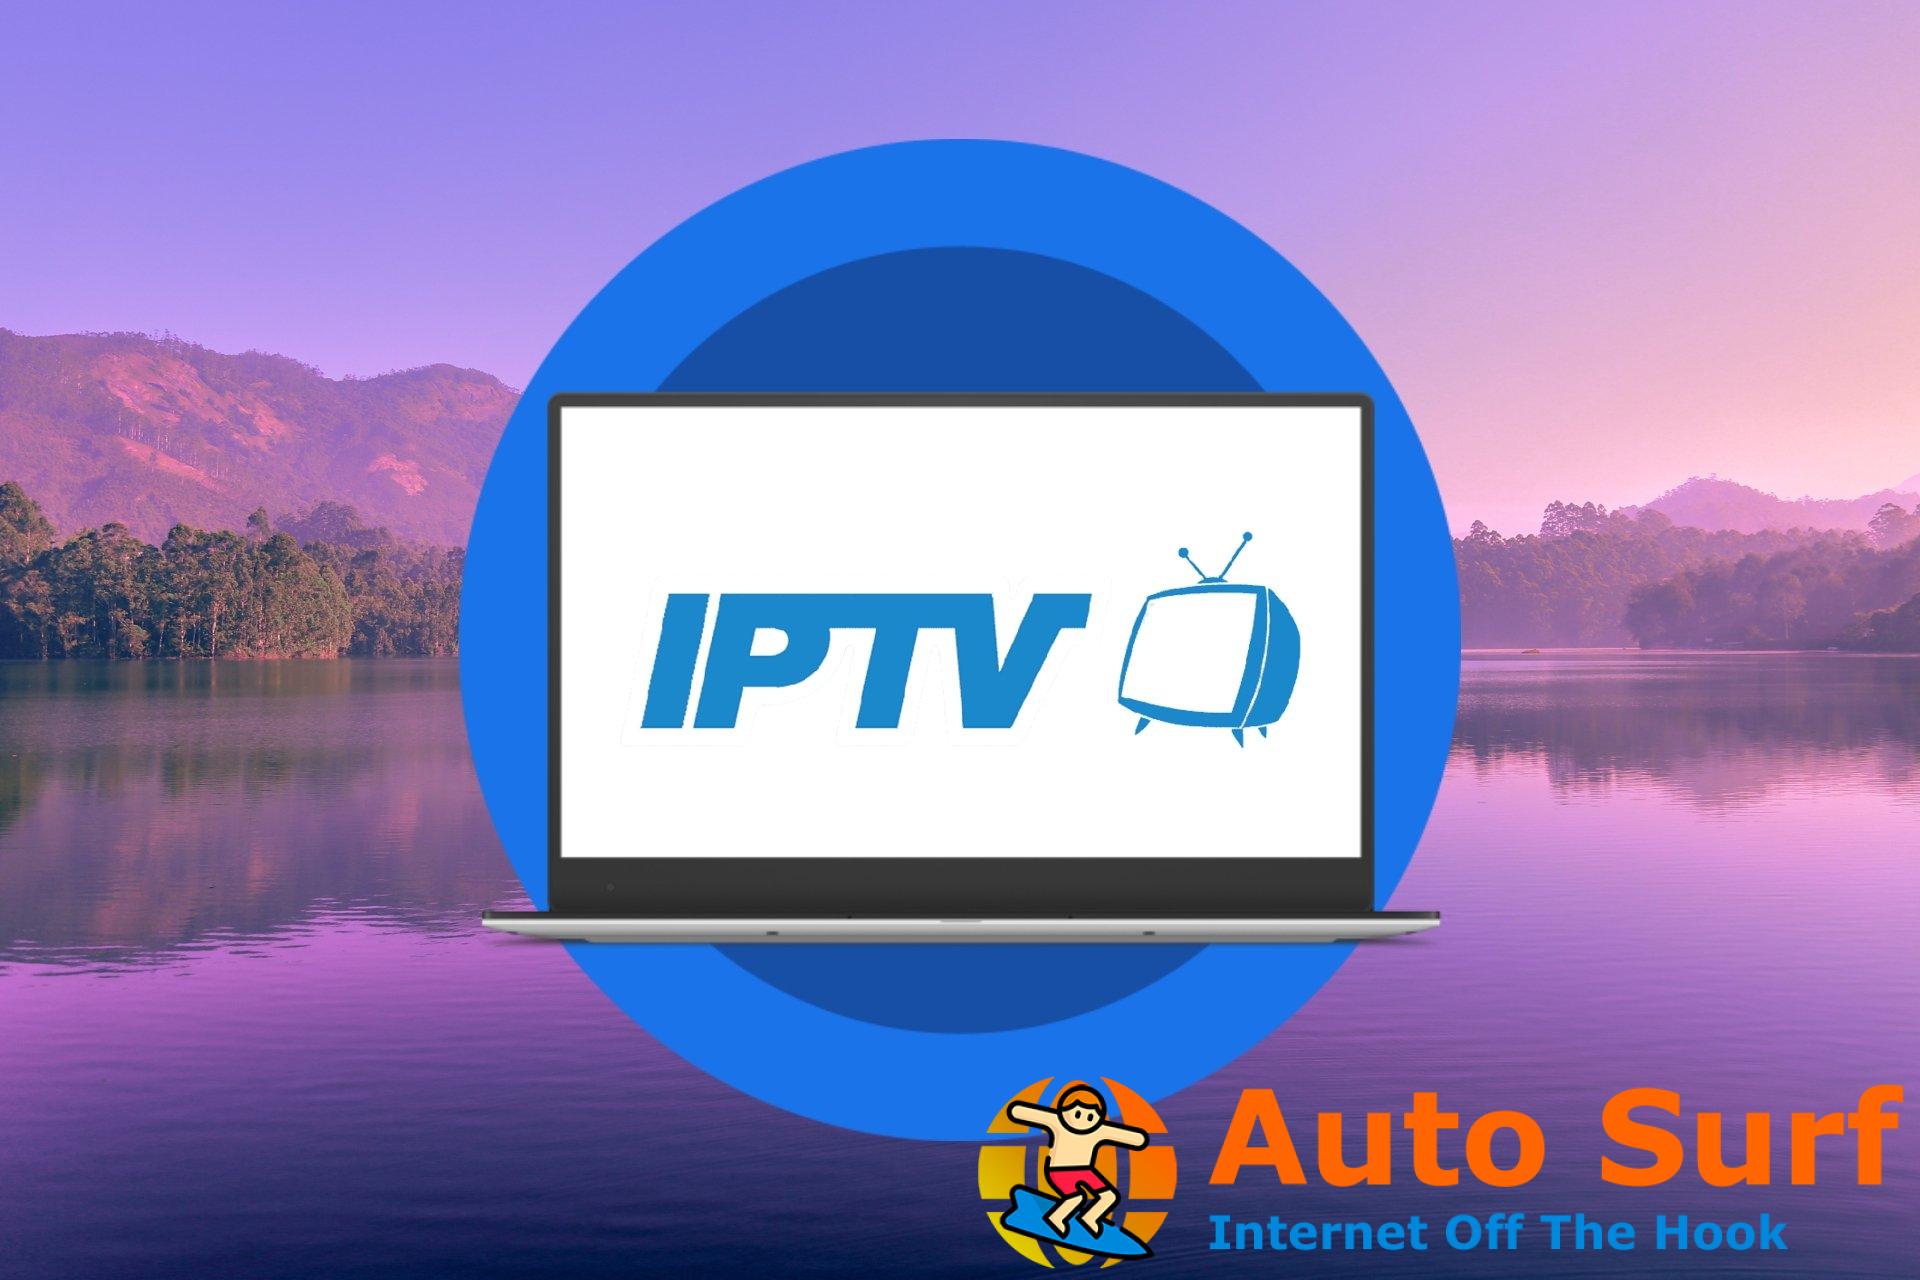 IPTV no funciona en AT&T: 4 formas de solucionarlo rápidamente